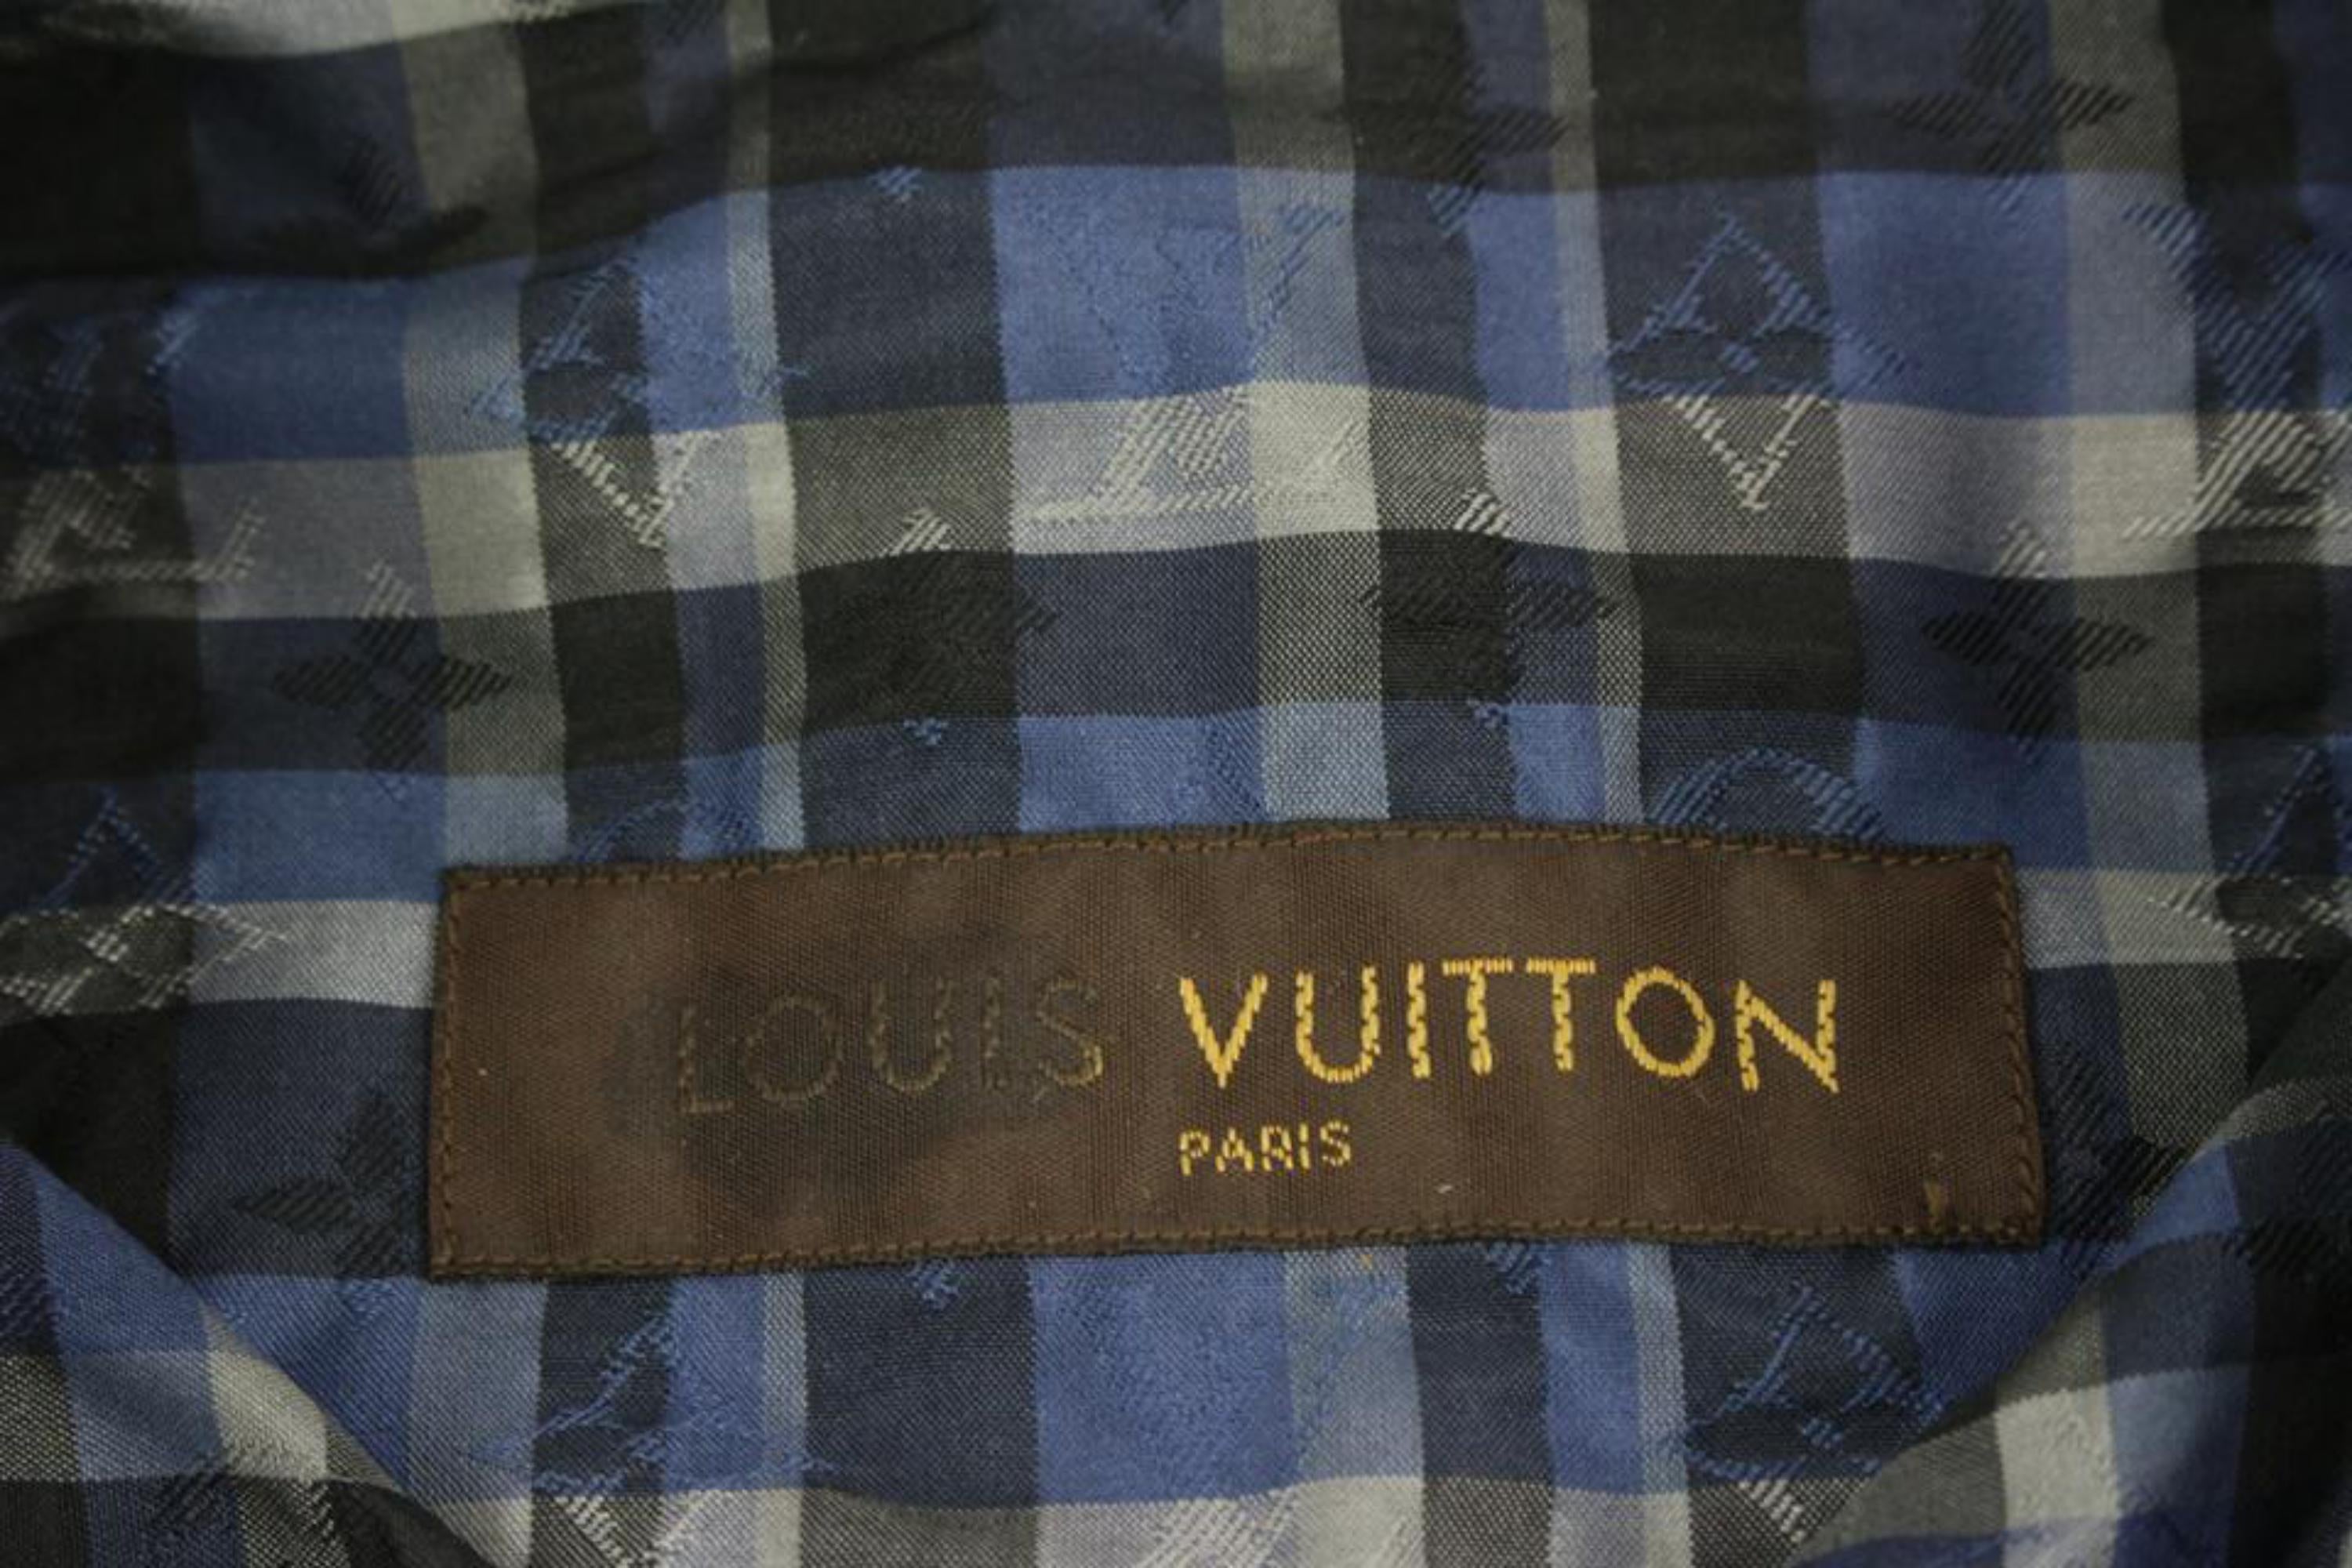 LOUIS VUITTON Size L Red Black Plaid Cotton Button Up Long Sleeve